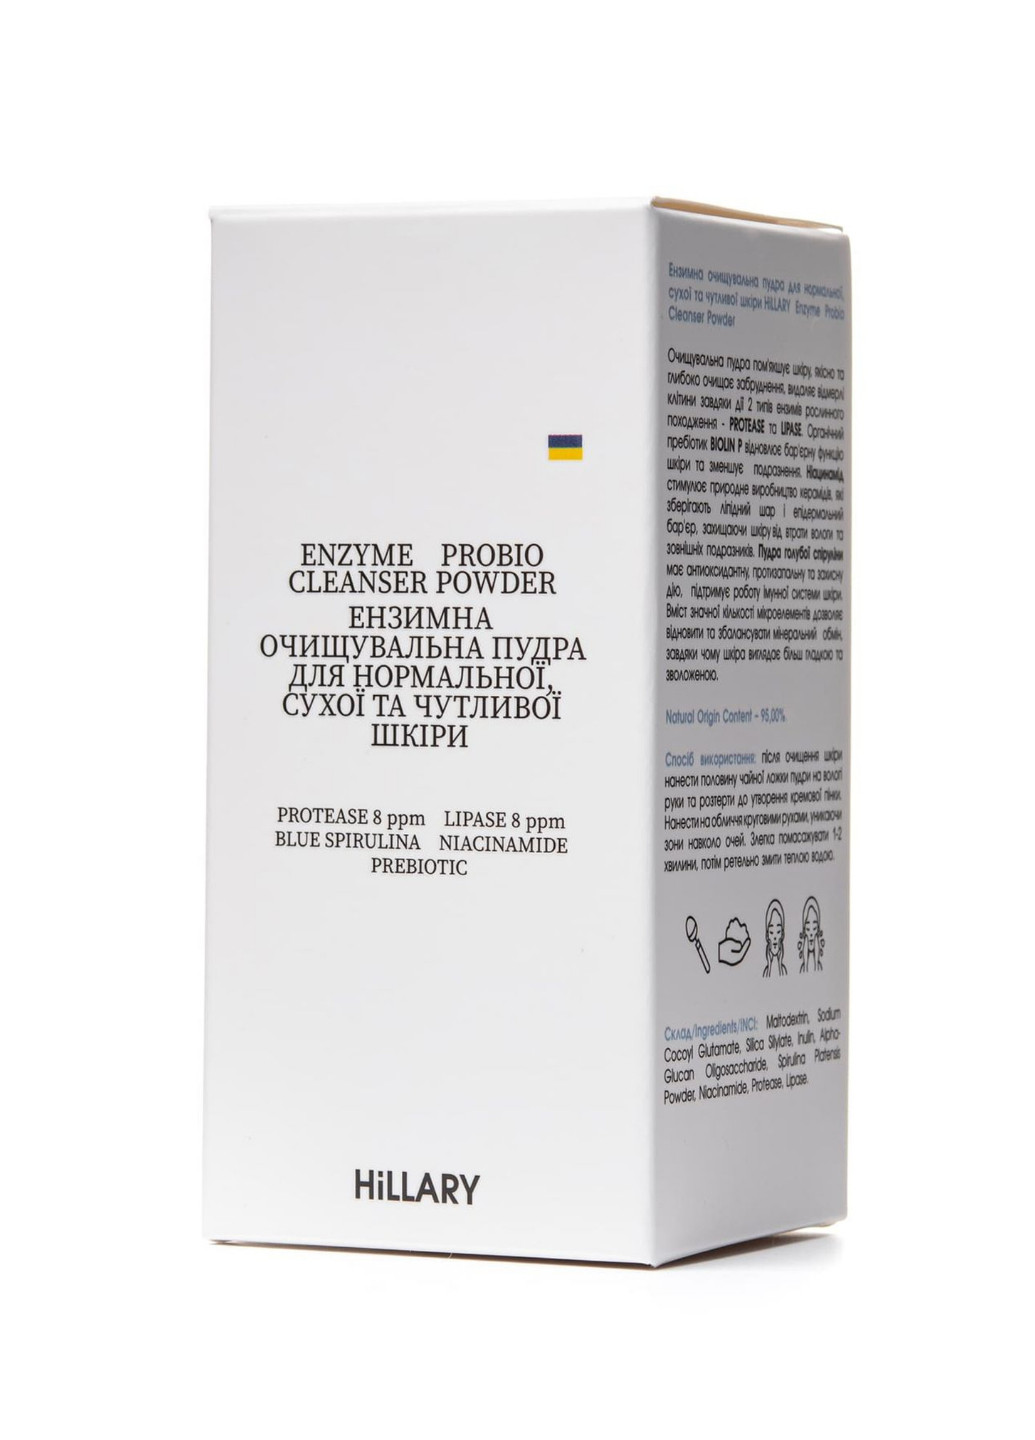 Ензимна очищувальна пудра + Тонік для нормального типу шкіри Hillary (260062865)